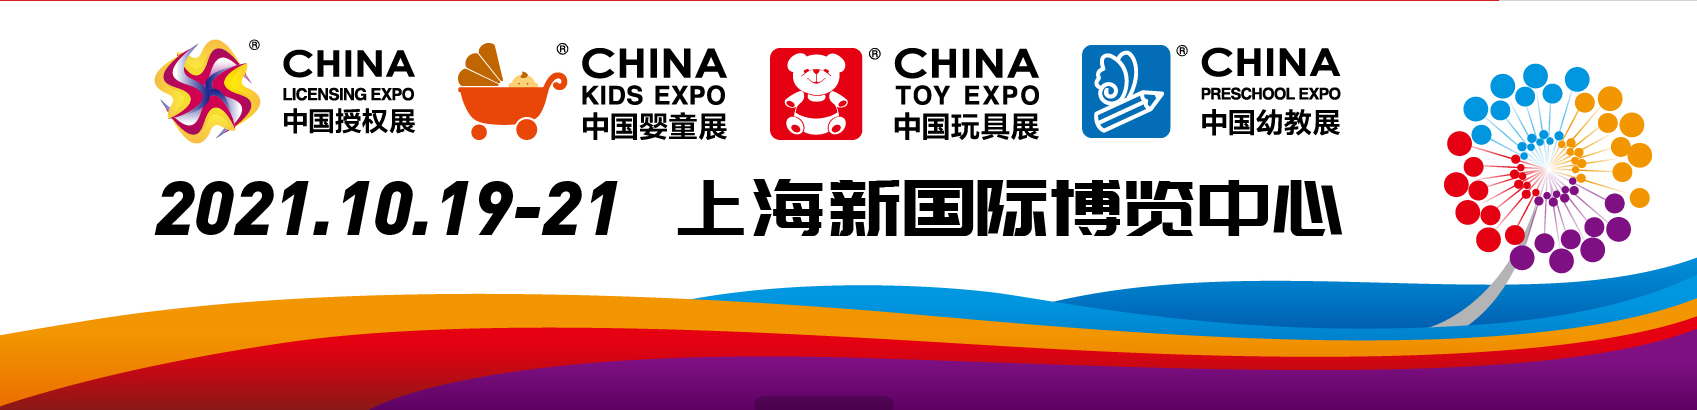 2021上海幼教展CTE中国玩具展